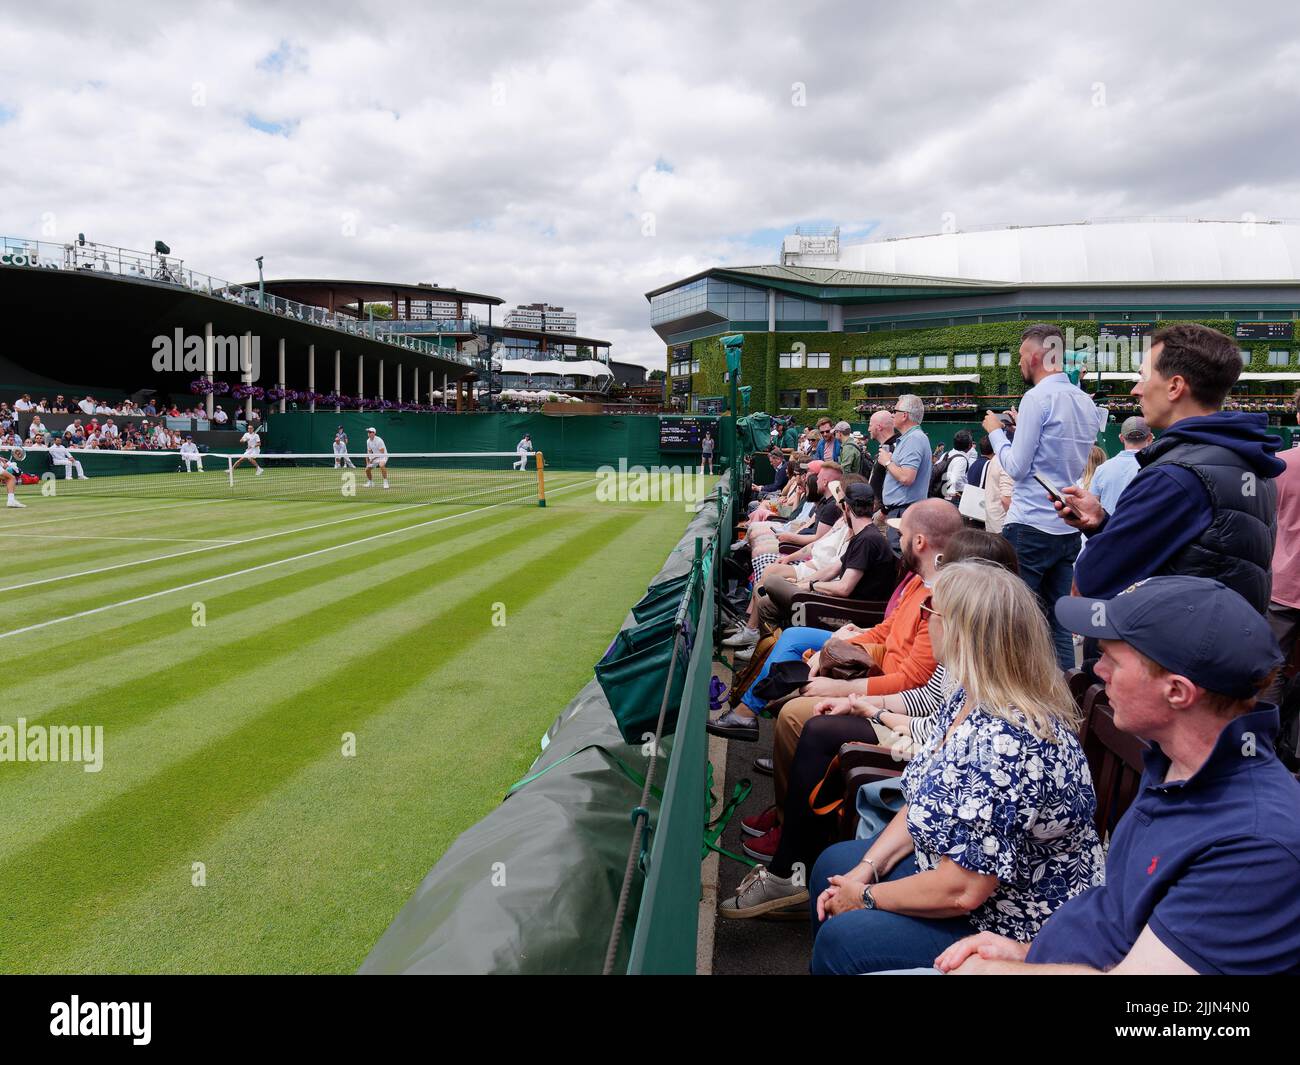 Wimbledon, Grand Londres, Angleterre, 02 juillet 2022: Championnat de tennis de Wimbledon. Les spectateurs assistent à un match de tennis. Banque D'Images